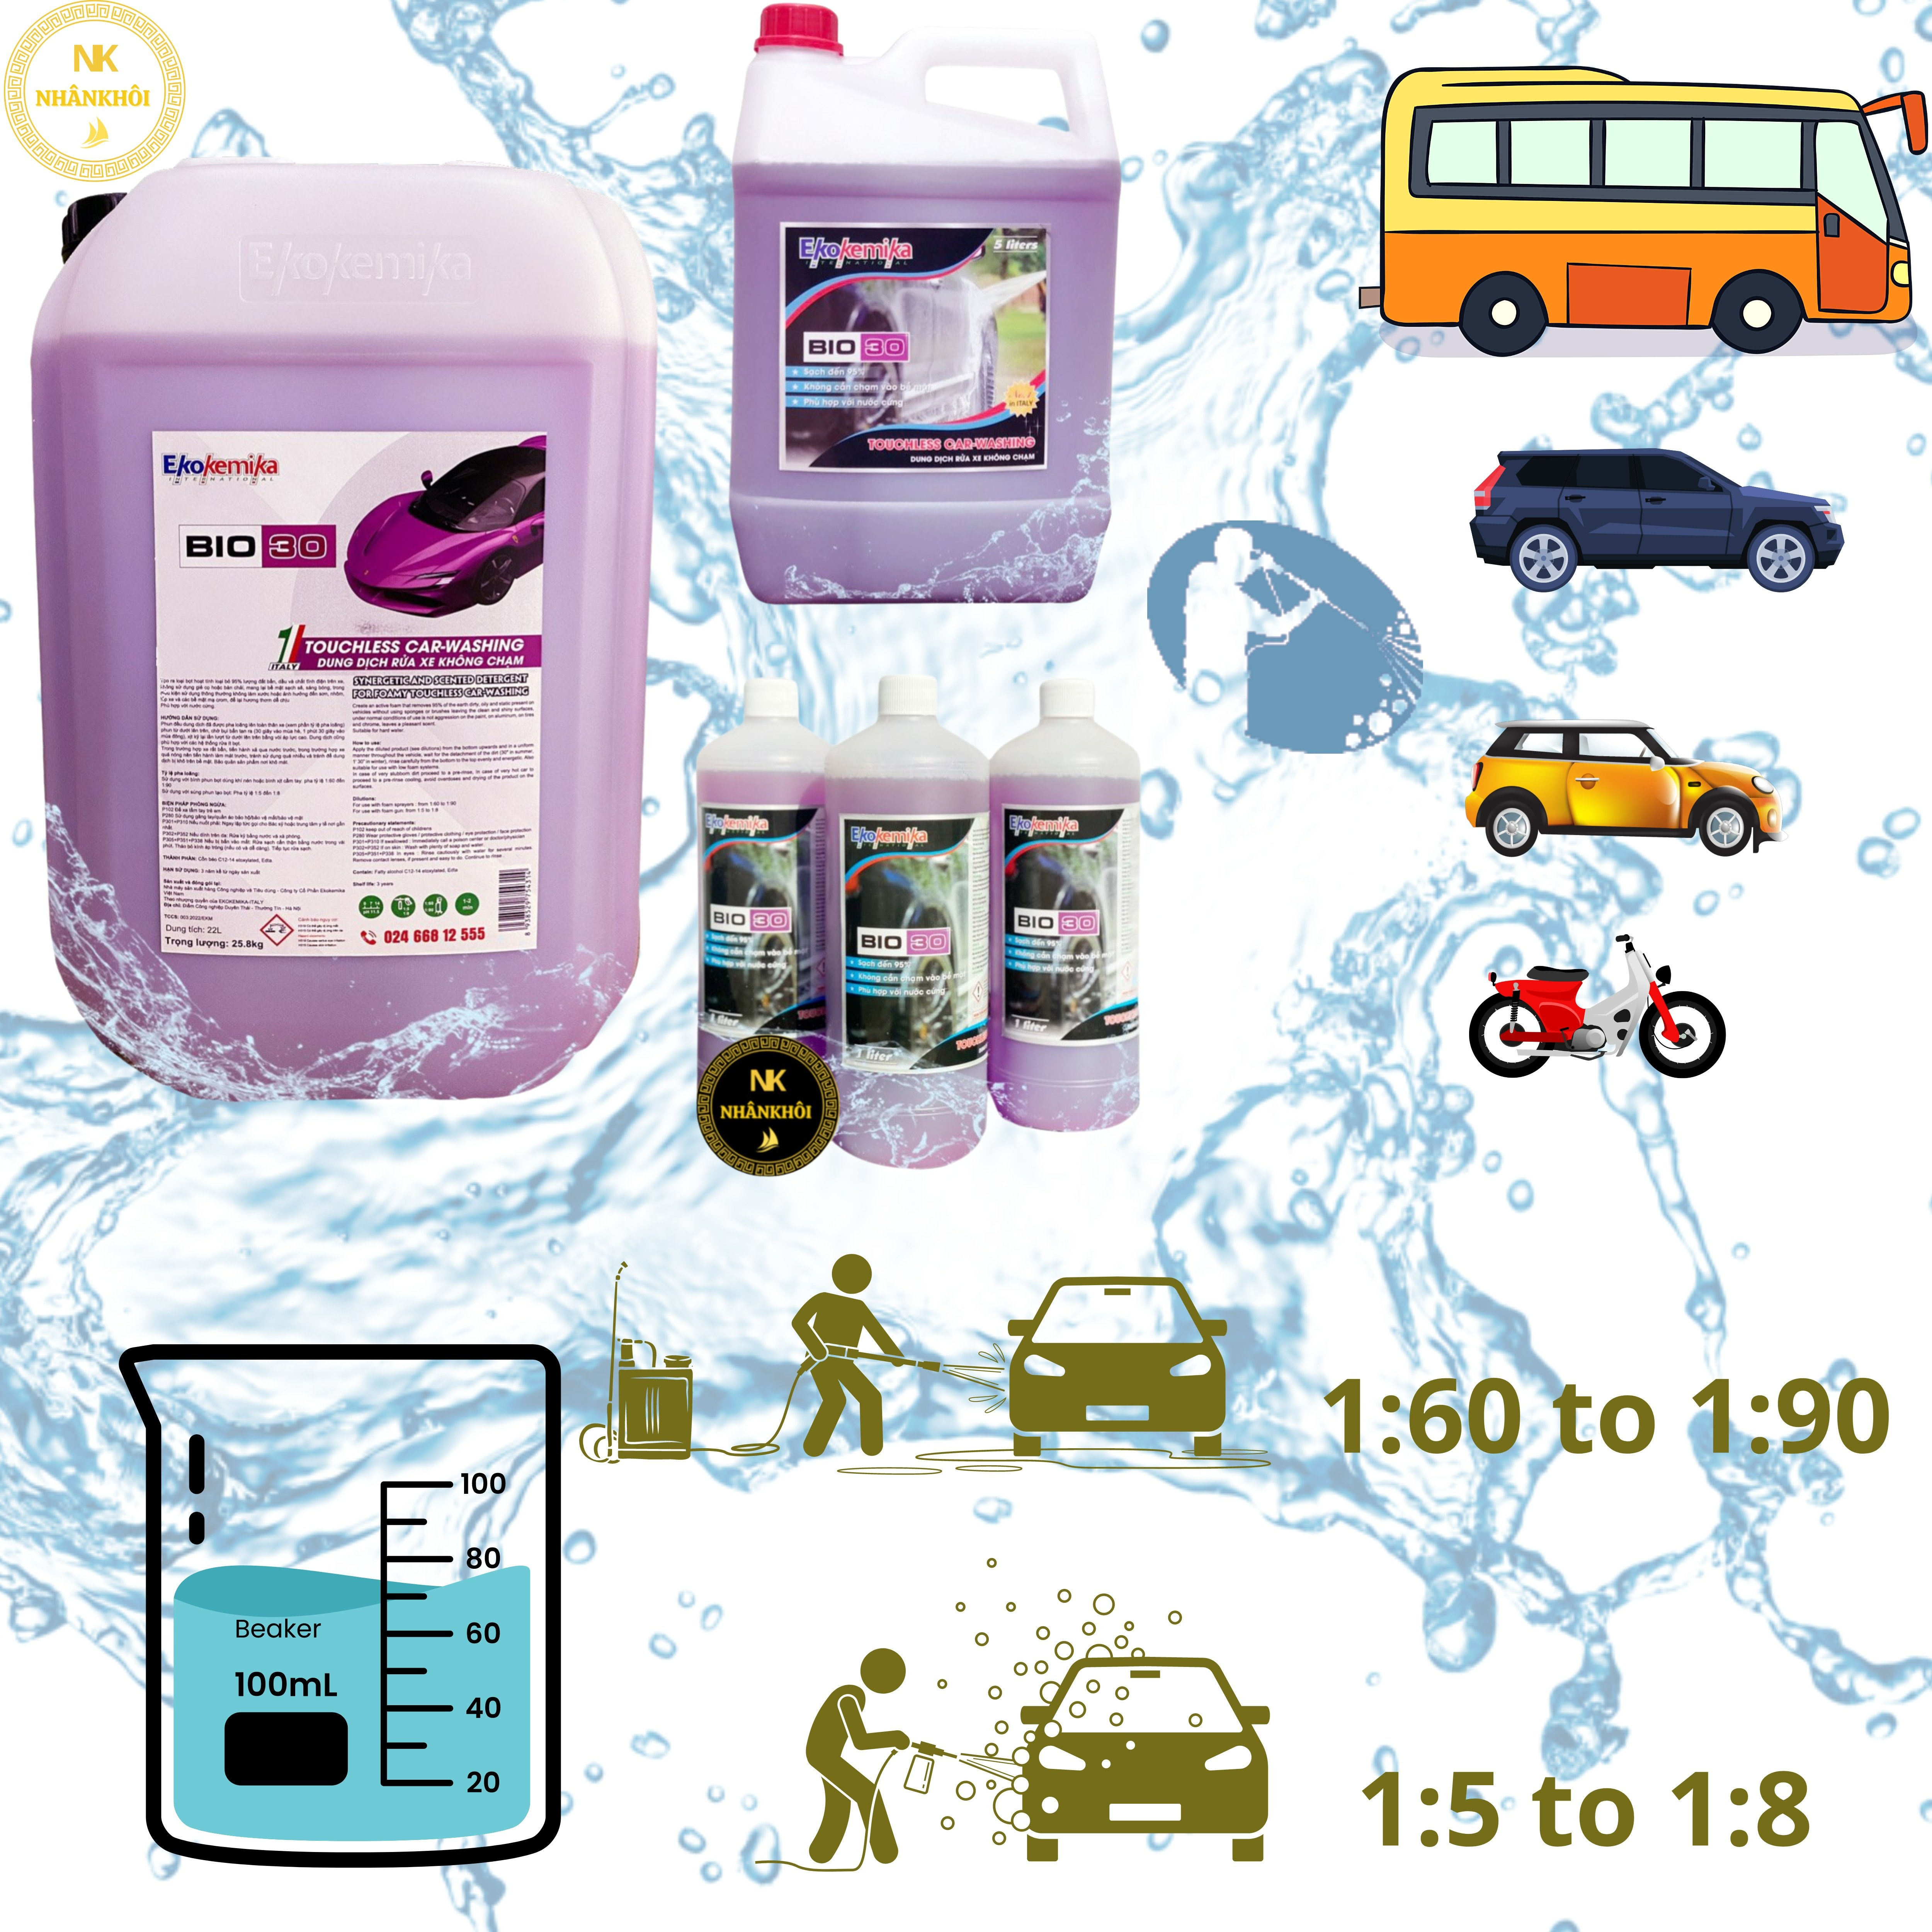 Bio 30 - 5 lít - Dung dịch rửa xe không chạm - Nước rửa xe bọt tuyết - Ekokemika